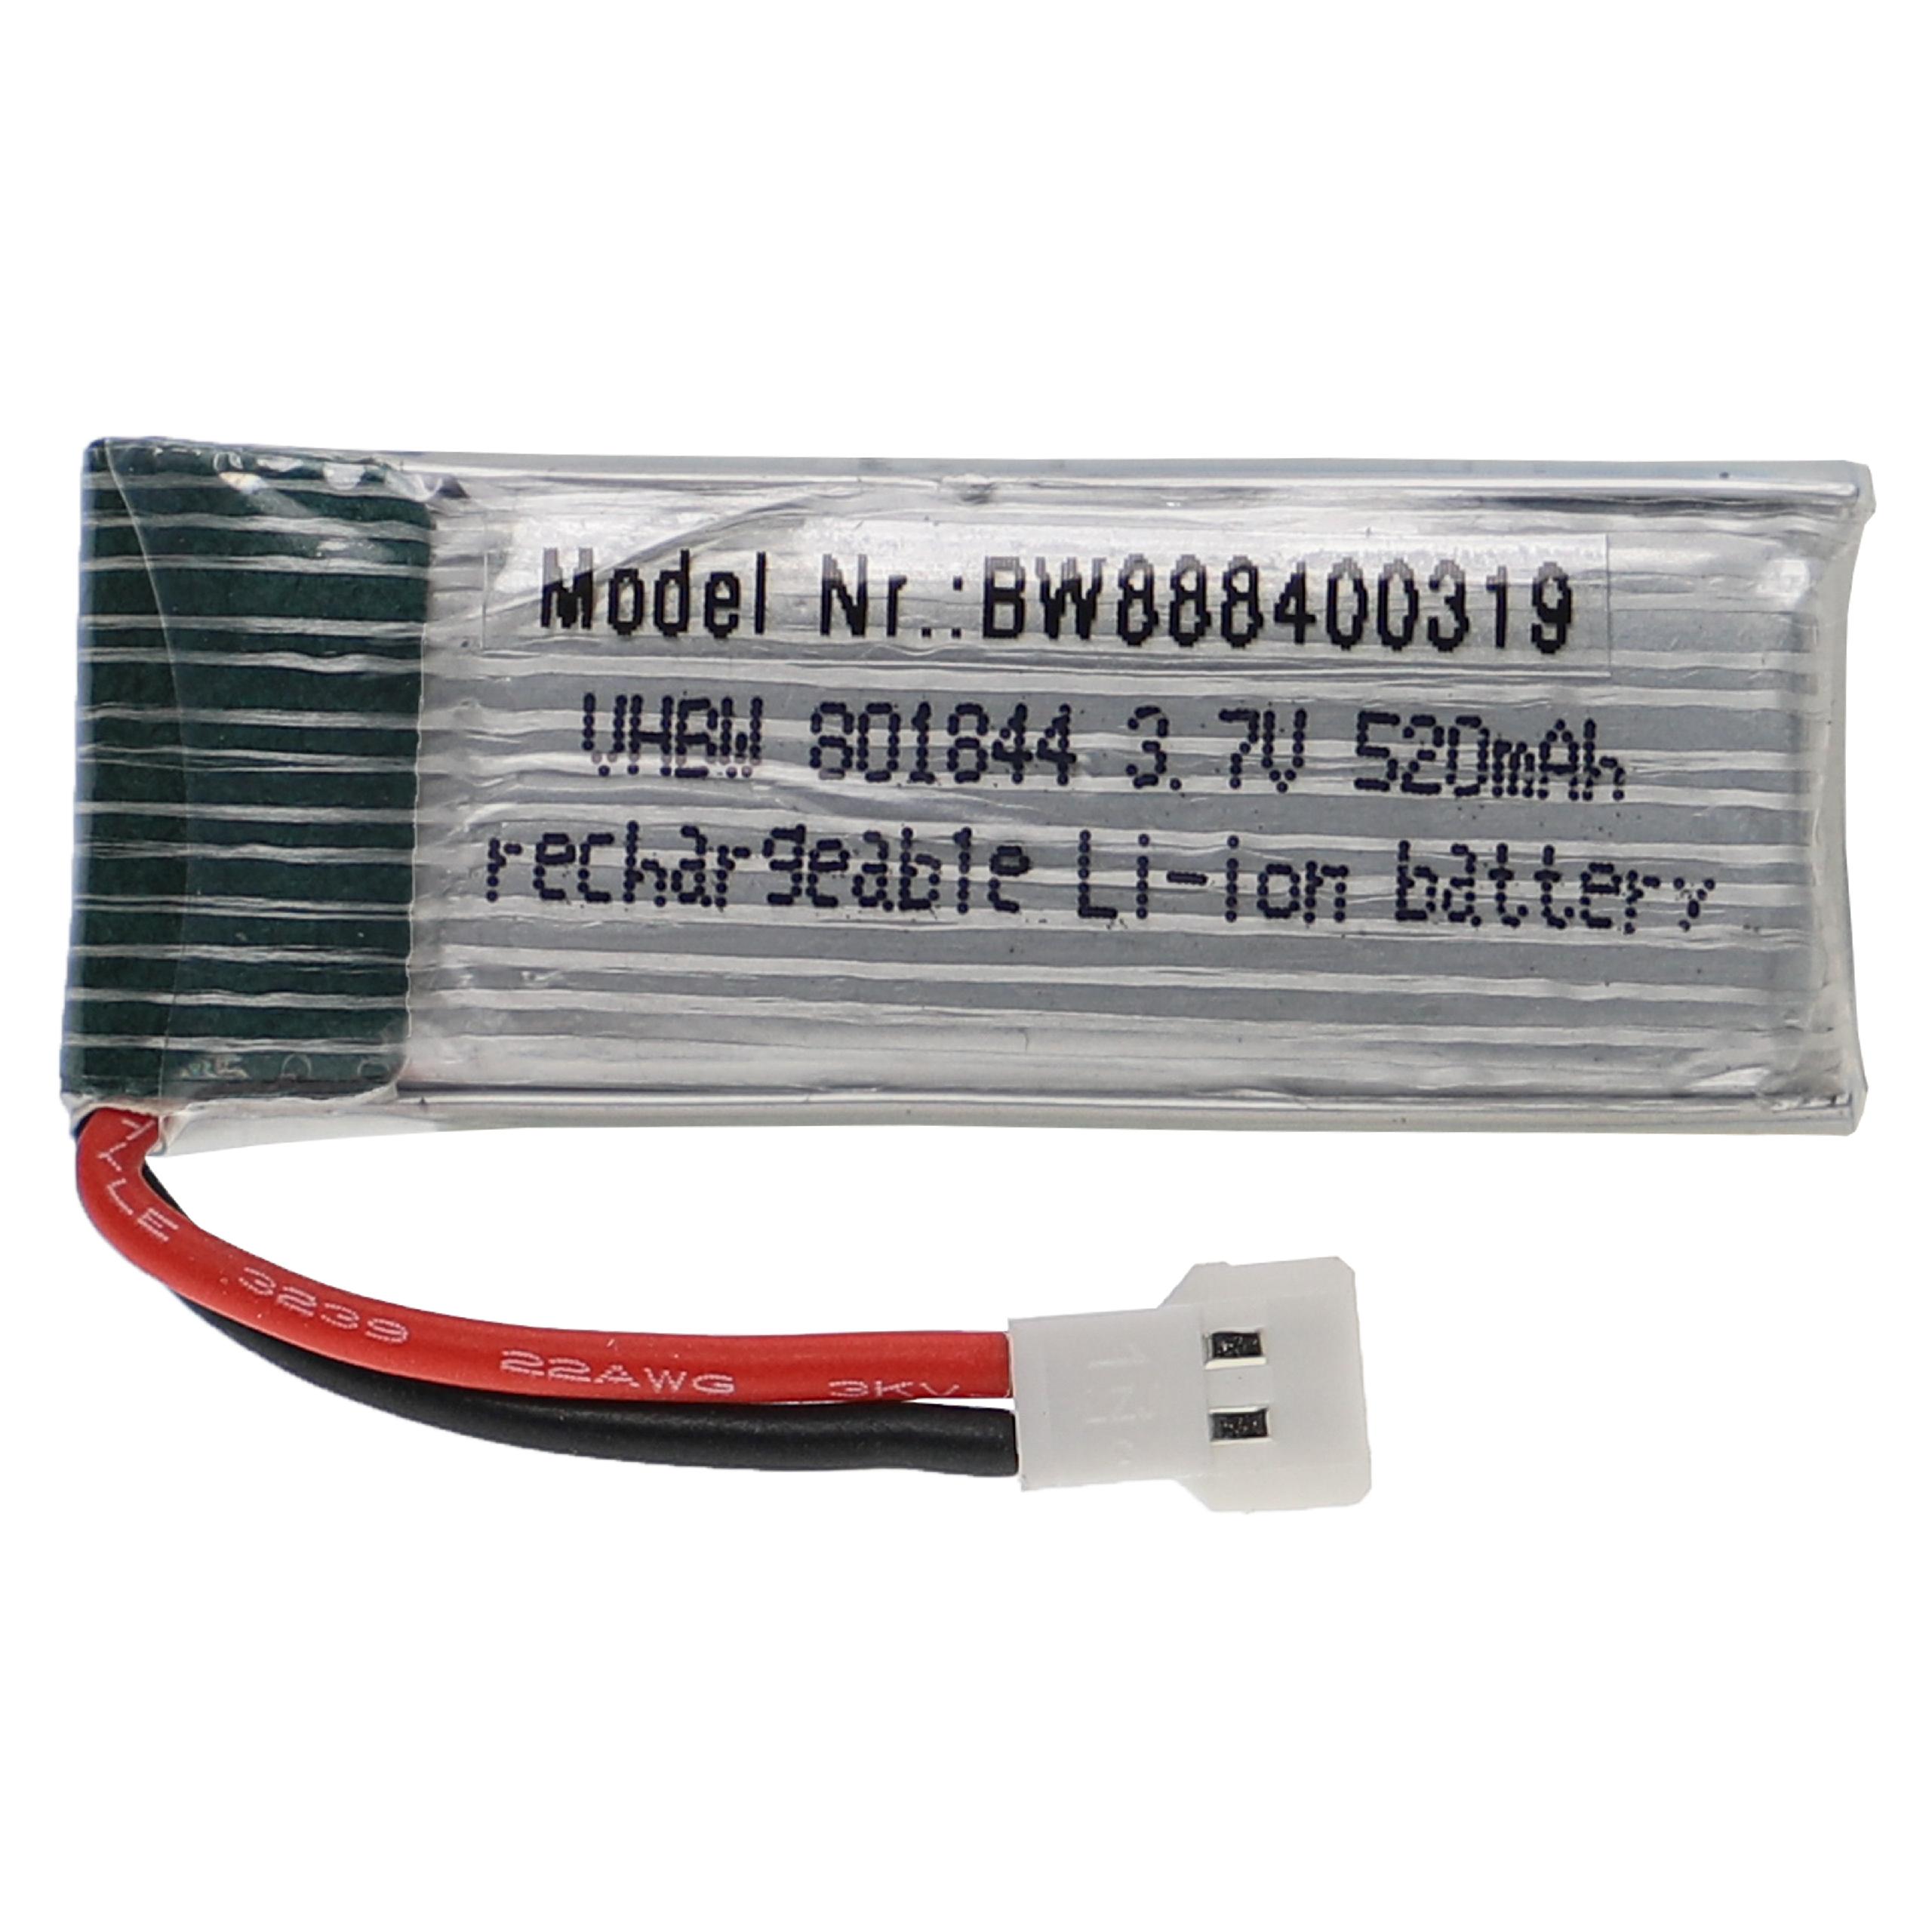 Batería para dispositivos modelismo - 520 mAh 3,7 V Li-poli, XH 2.54 2P